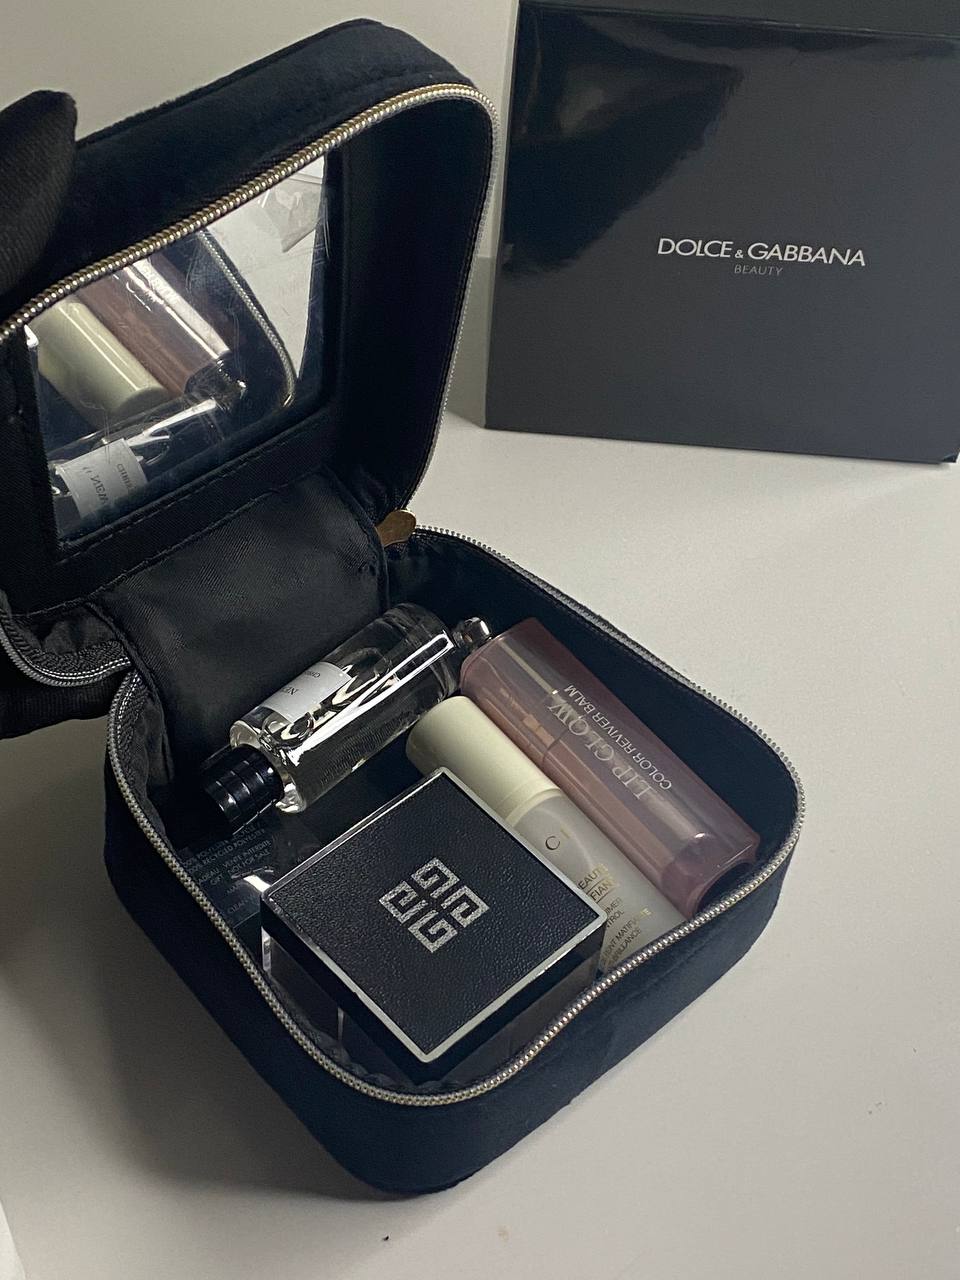 D&G Makeup Case - Black